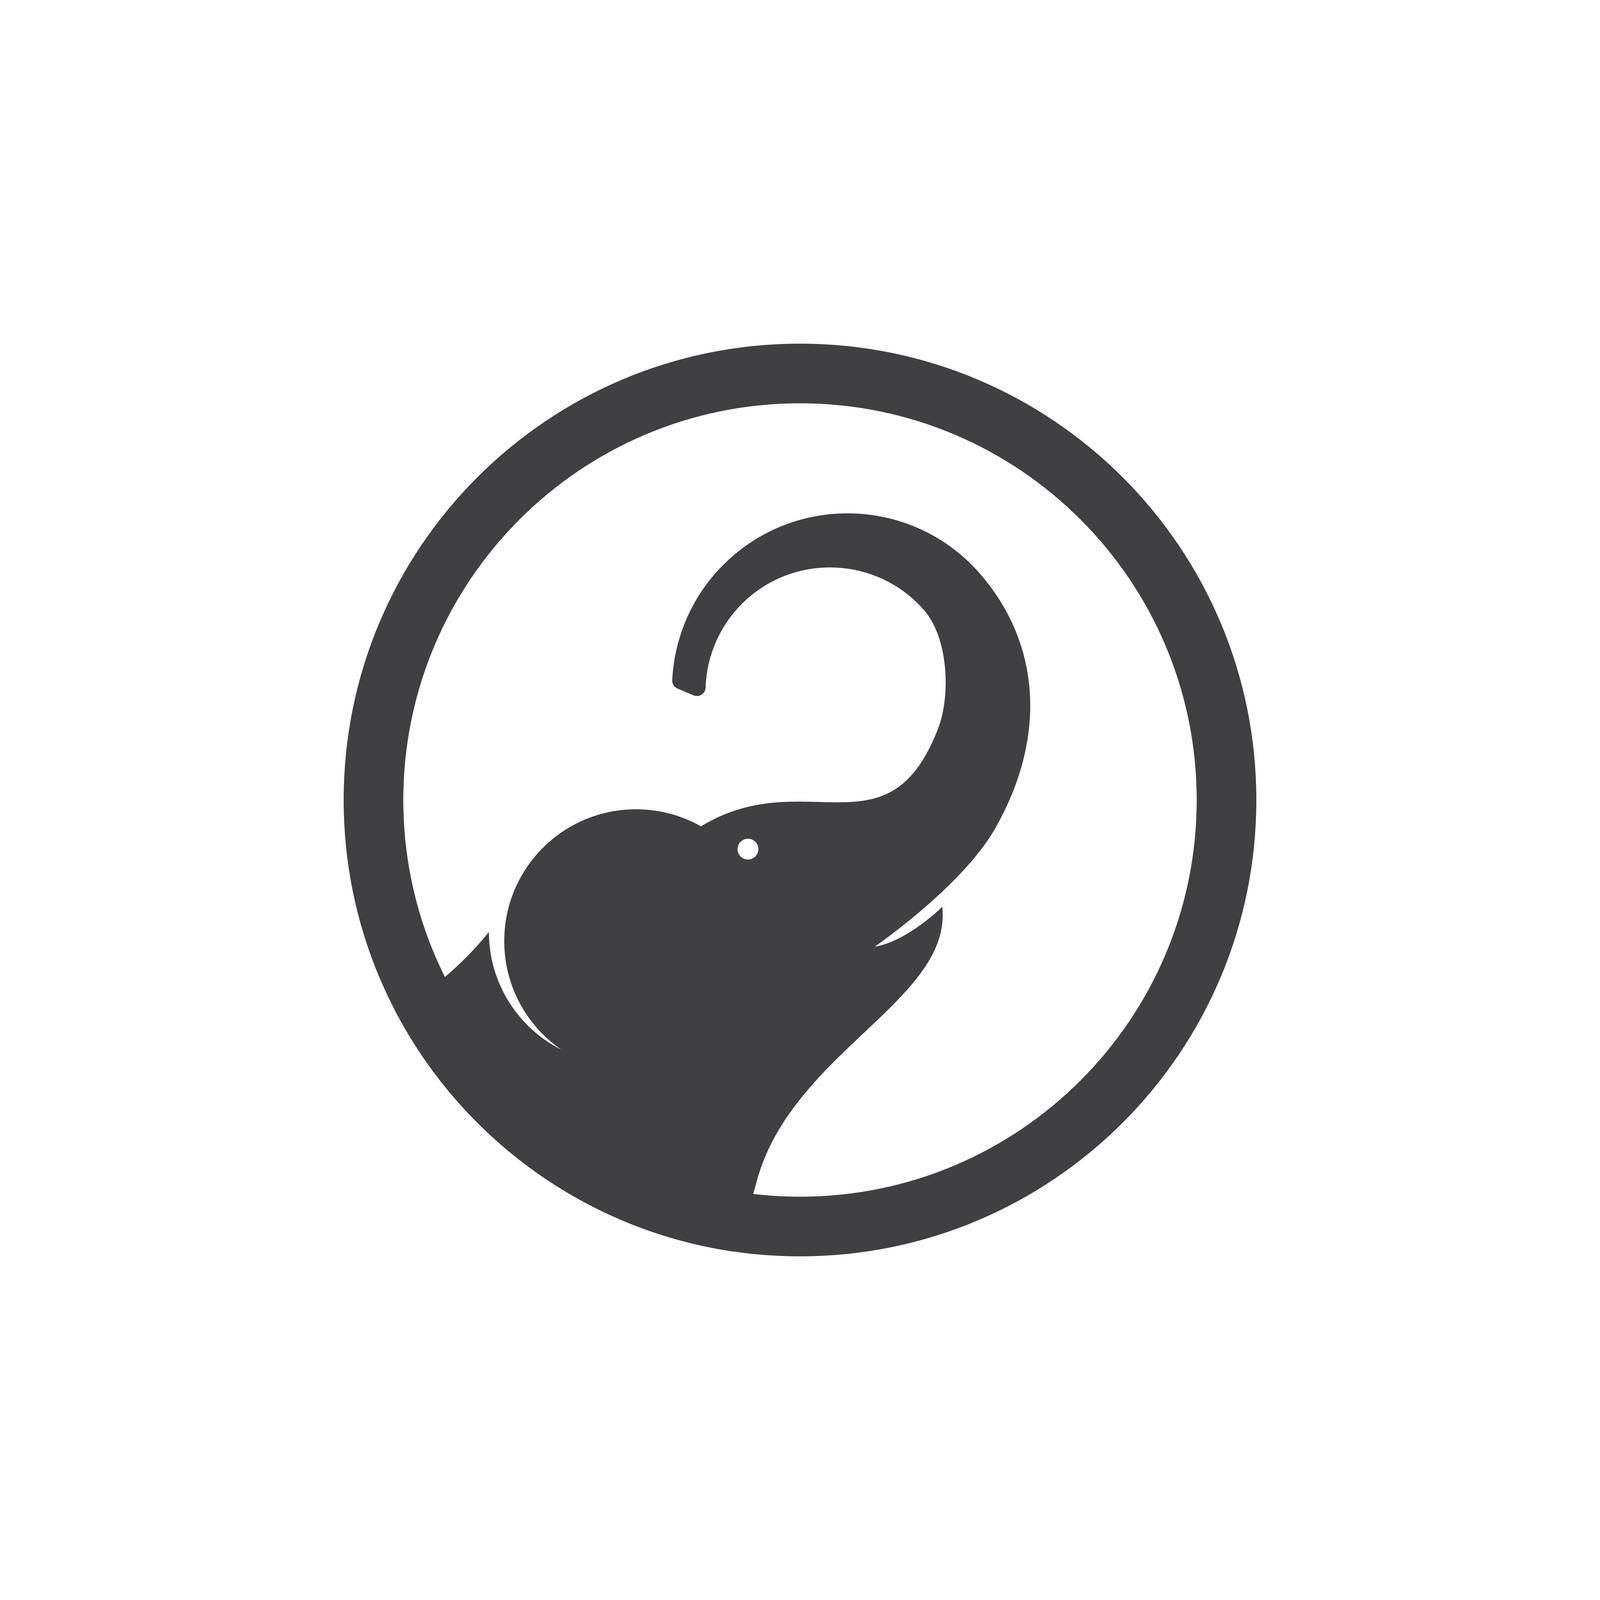 Elephant logo illustration by awk